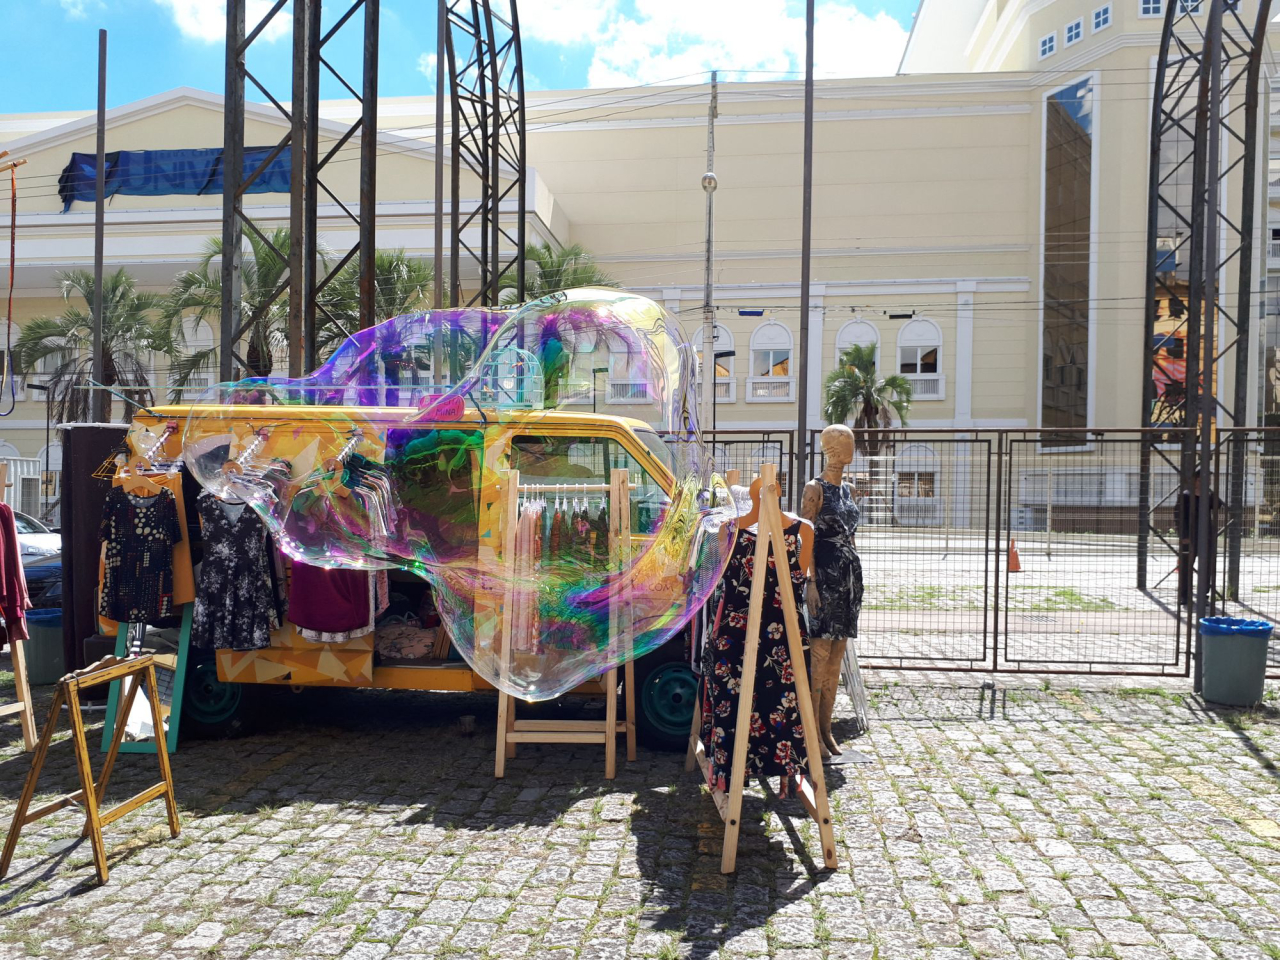 A fórmula das bolhas de sabão gigantes pode ser aprendida em oficina. Foto: Matheus Nascimento/Gazeta do Povo.